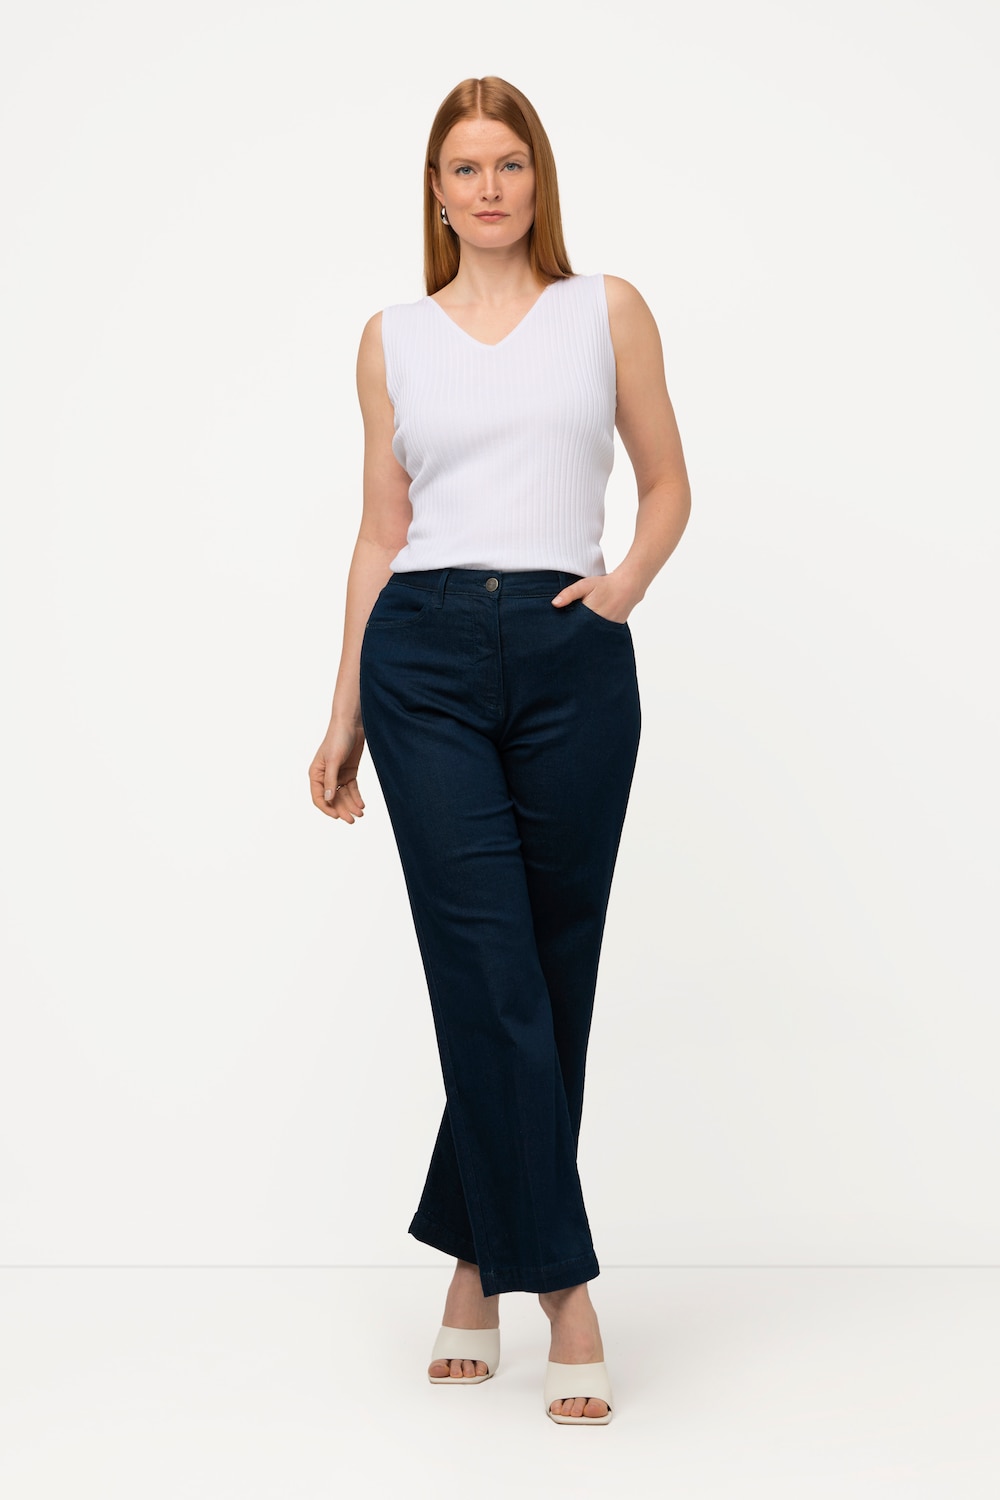 Grote Maten jeans, Dames, blauw, Maat: 52, Katoen/Synthetische vezels, Ulla Popken